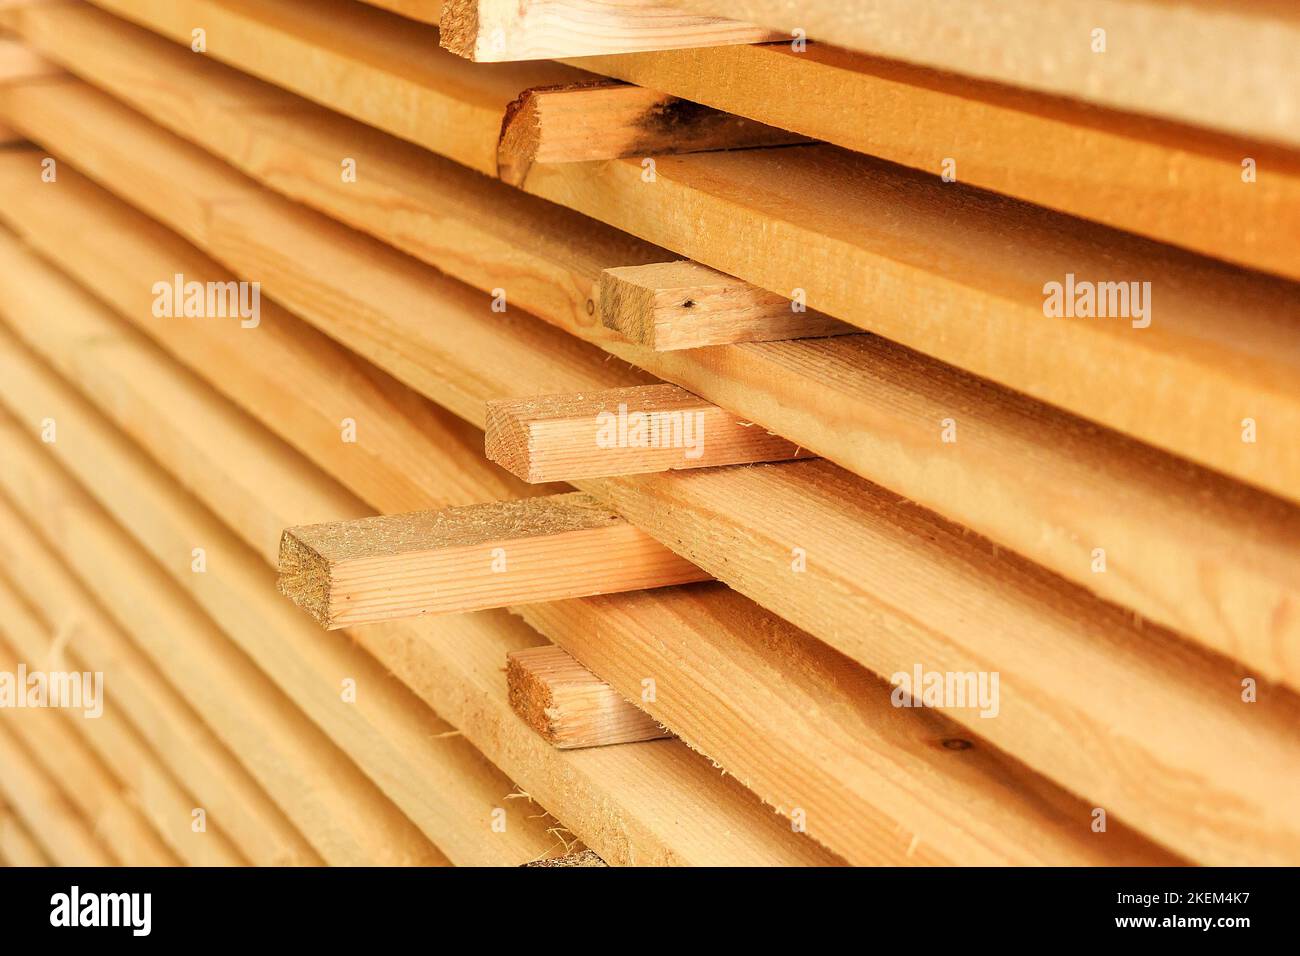 Holzbretter werden in einem Sägewerk oder einer Schreinerei gestapelt. Sägen Trocknen und Vermarktung von Holz. Industrieller Hintergrund. Stockfoto